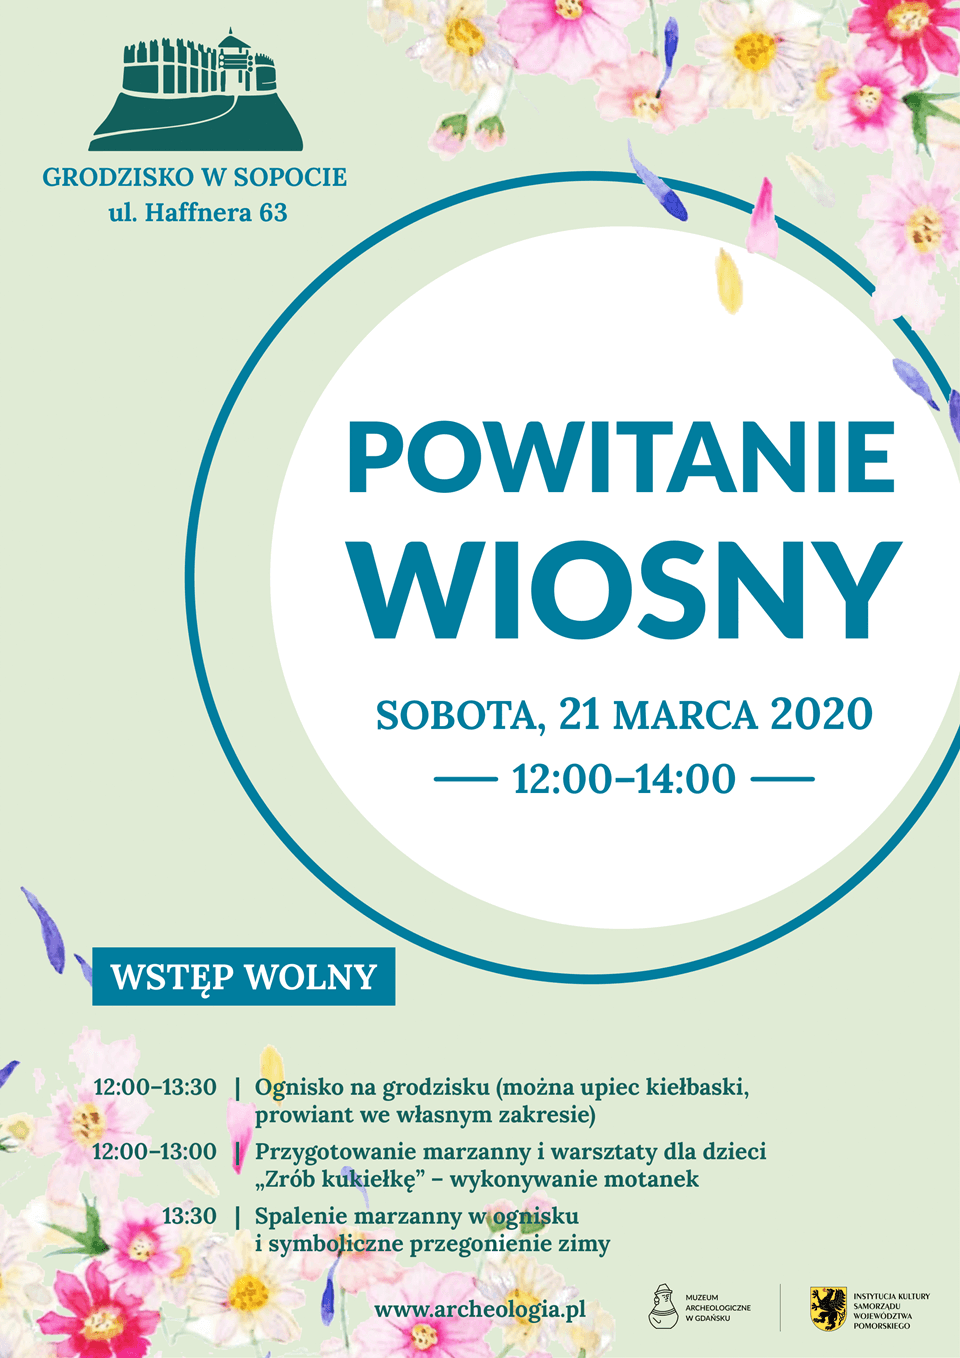 Powitanie Wiosny 2020 na Grodzisku w Sopocie - plakat